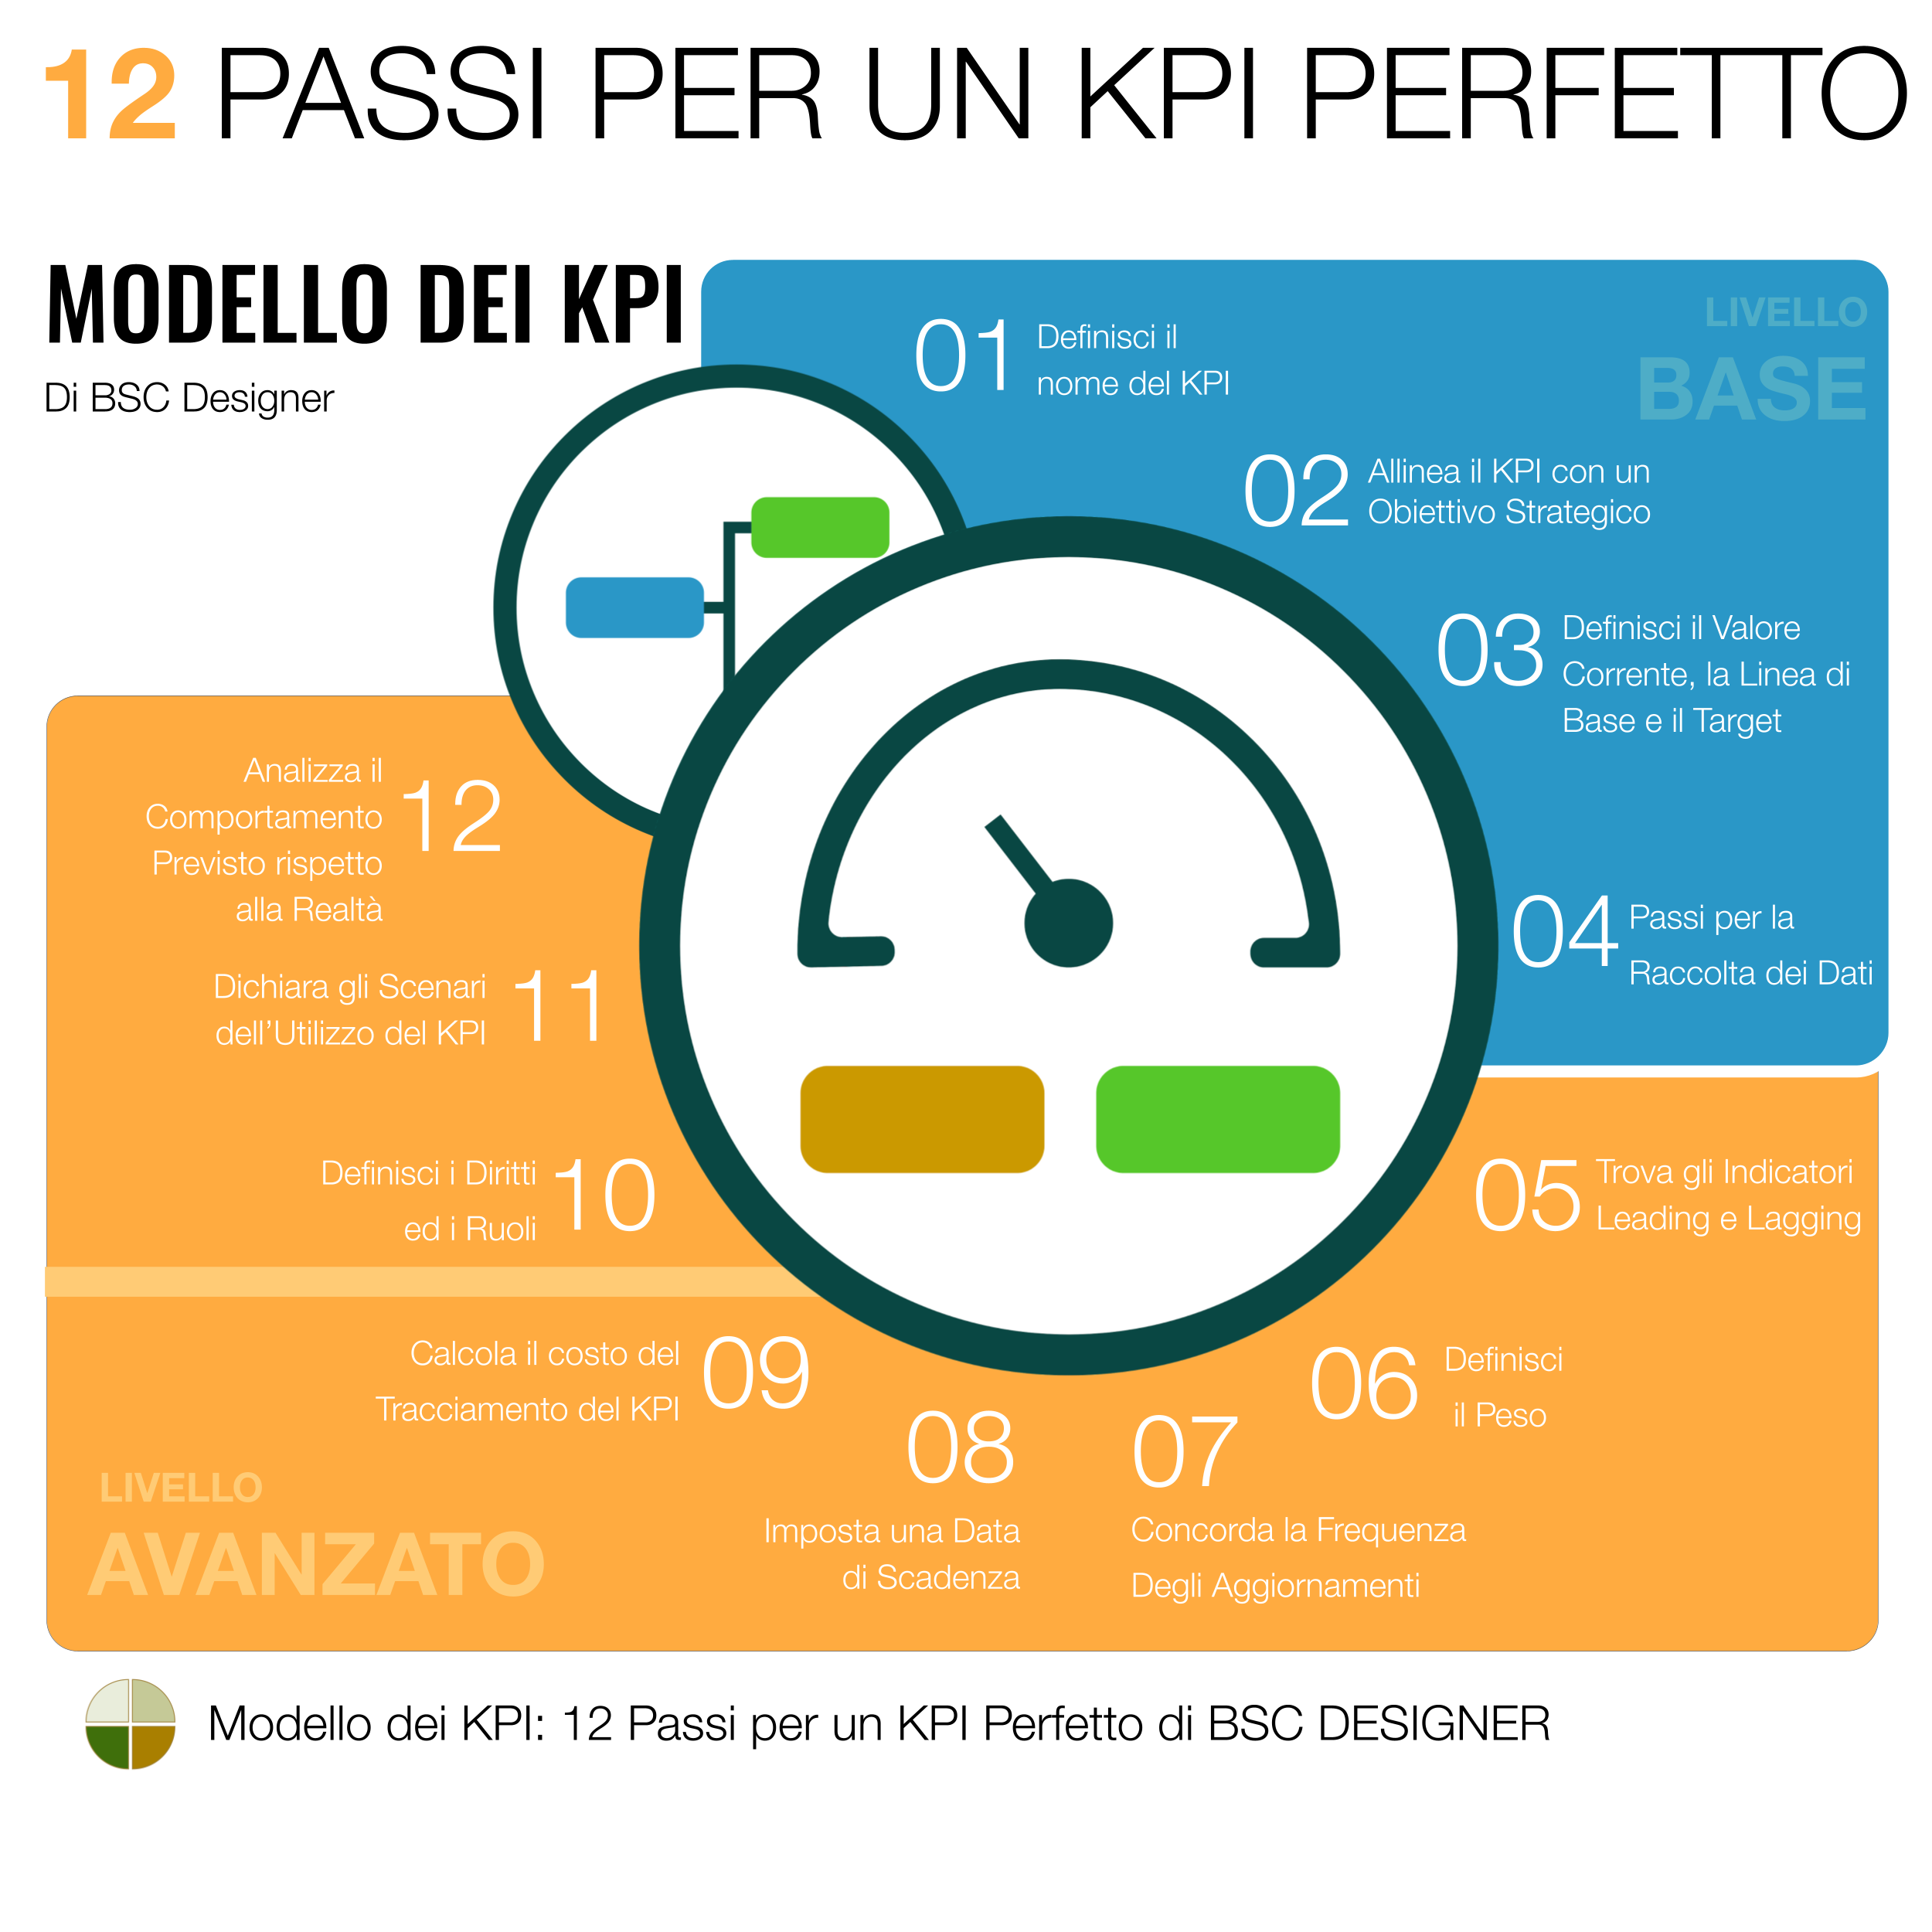 Modello dei KPI: 12 passi per un KPI perfetto